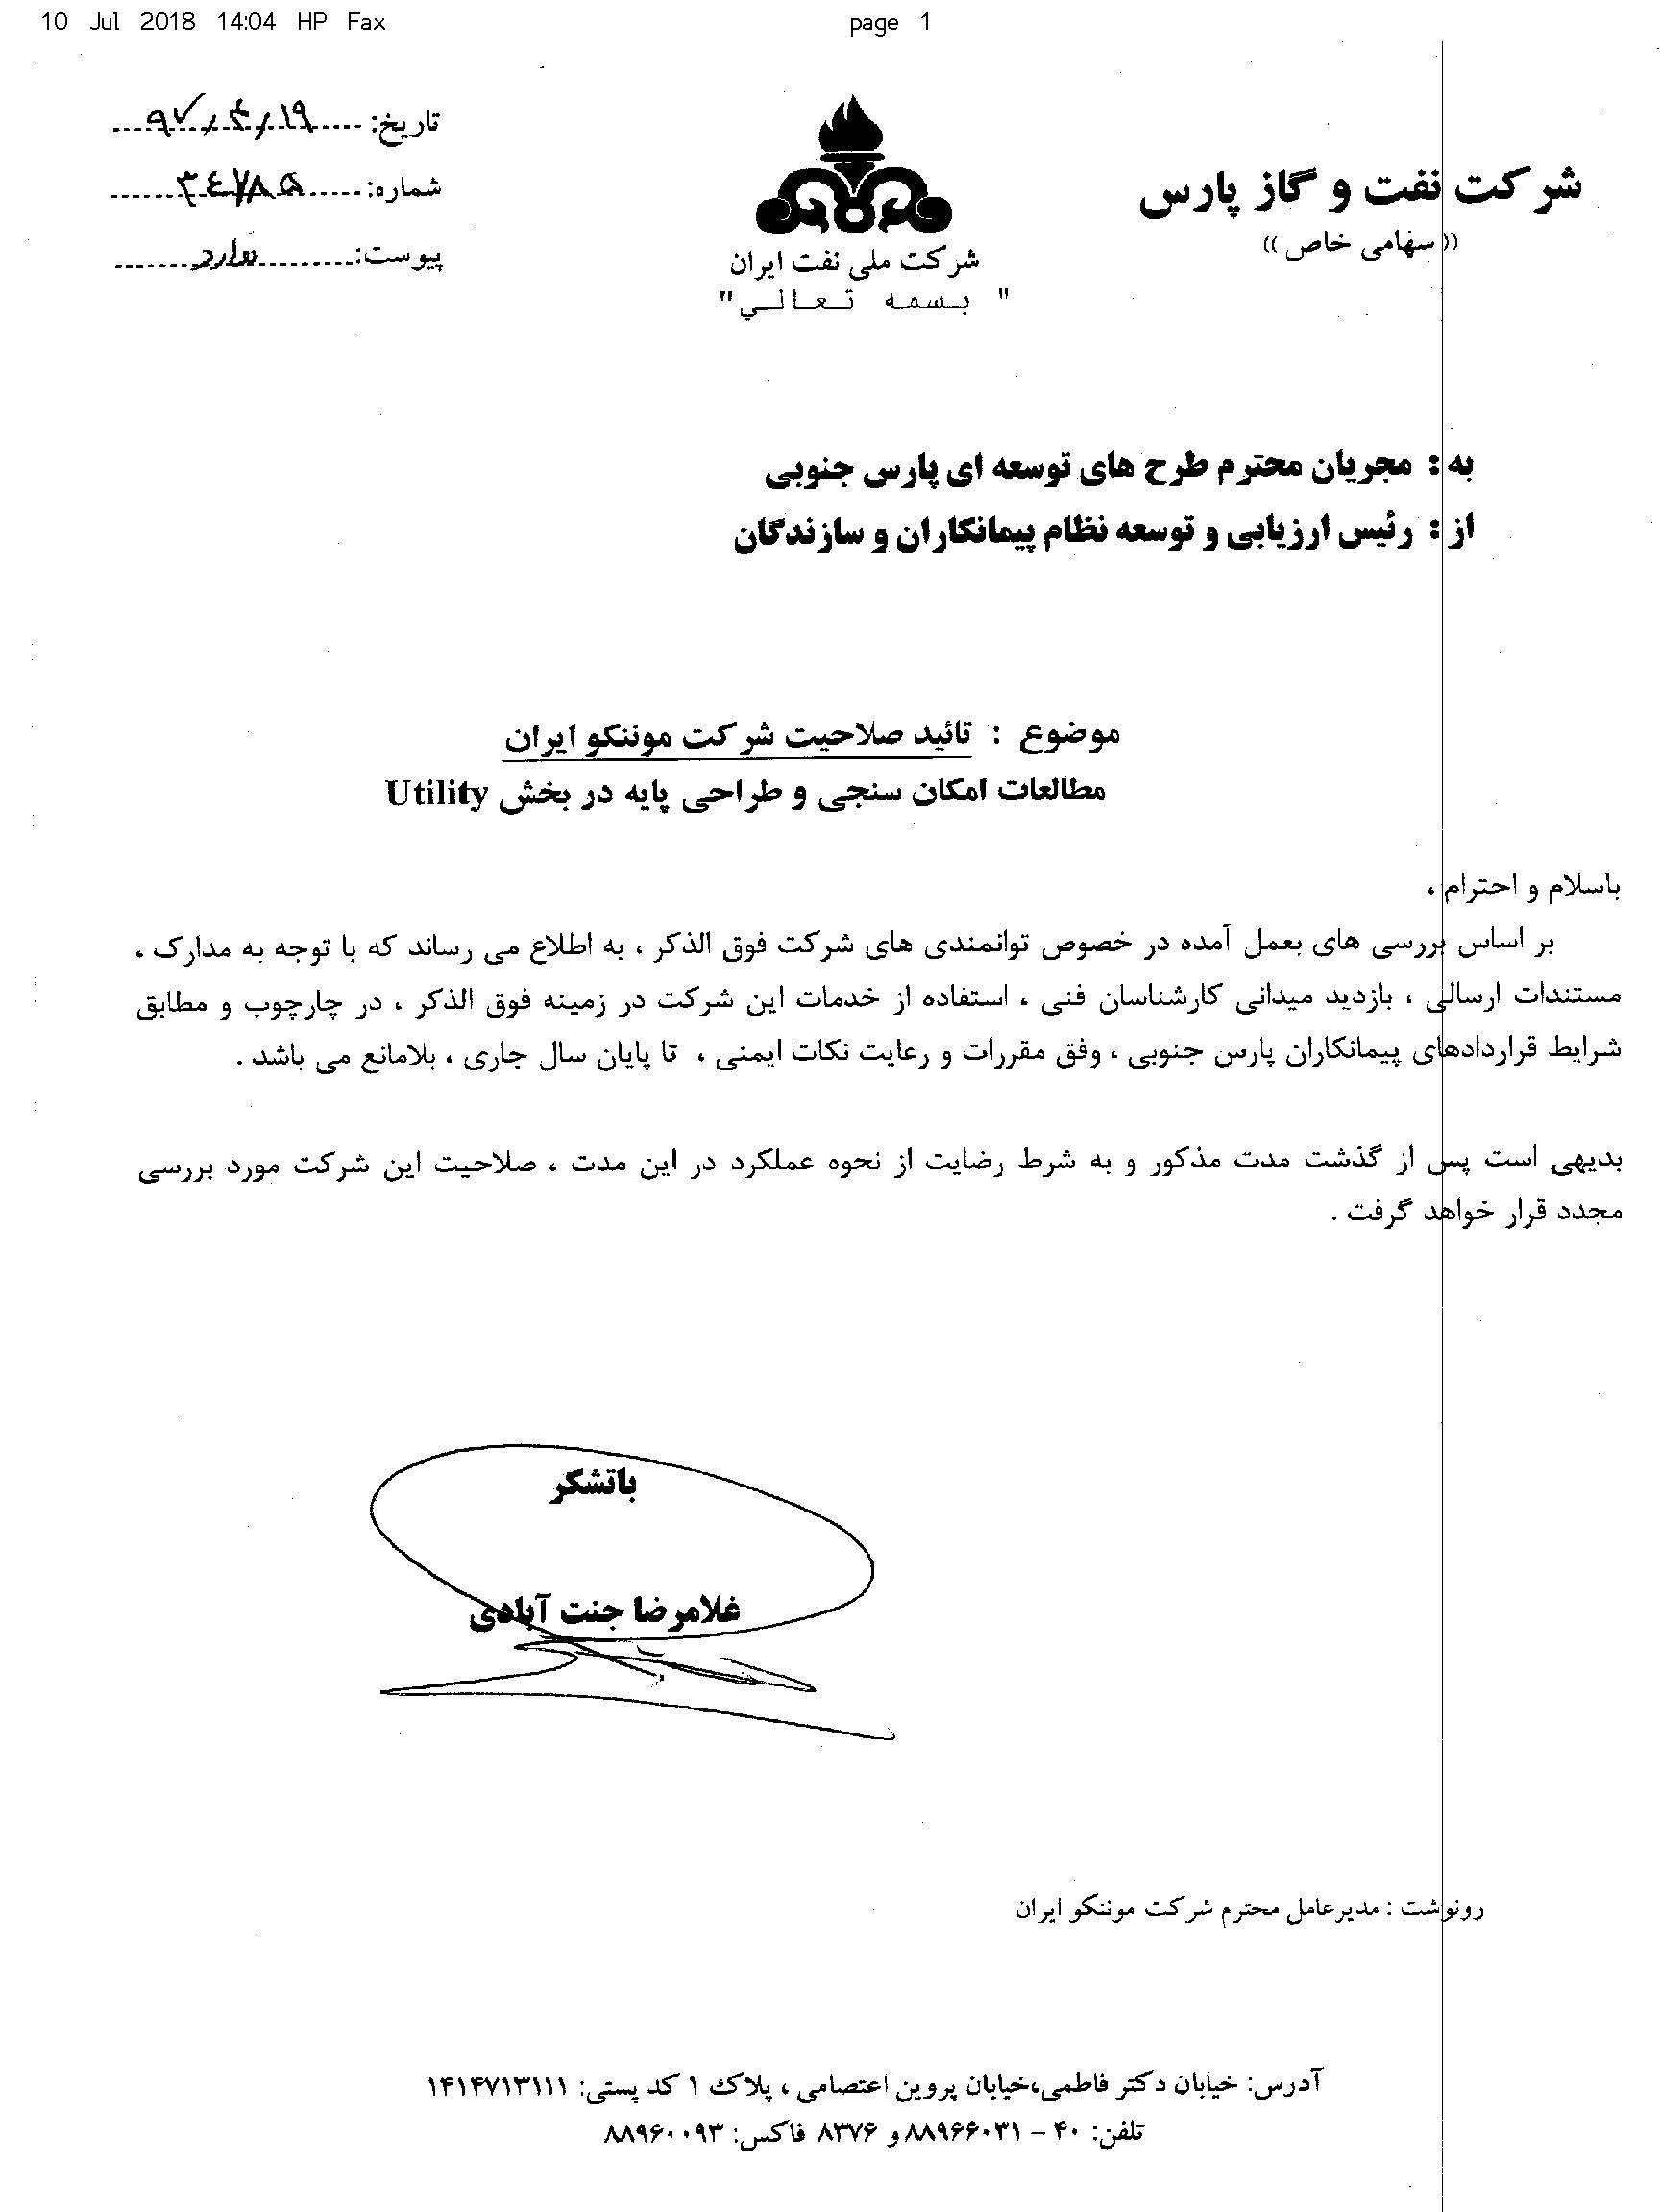  تایید صلاحیت موننکو ایران در ارائه خدمات مشاوره و مهندسی توسط شرکت نفت و گاز پارس 